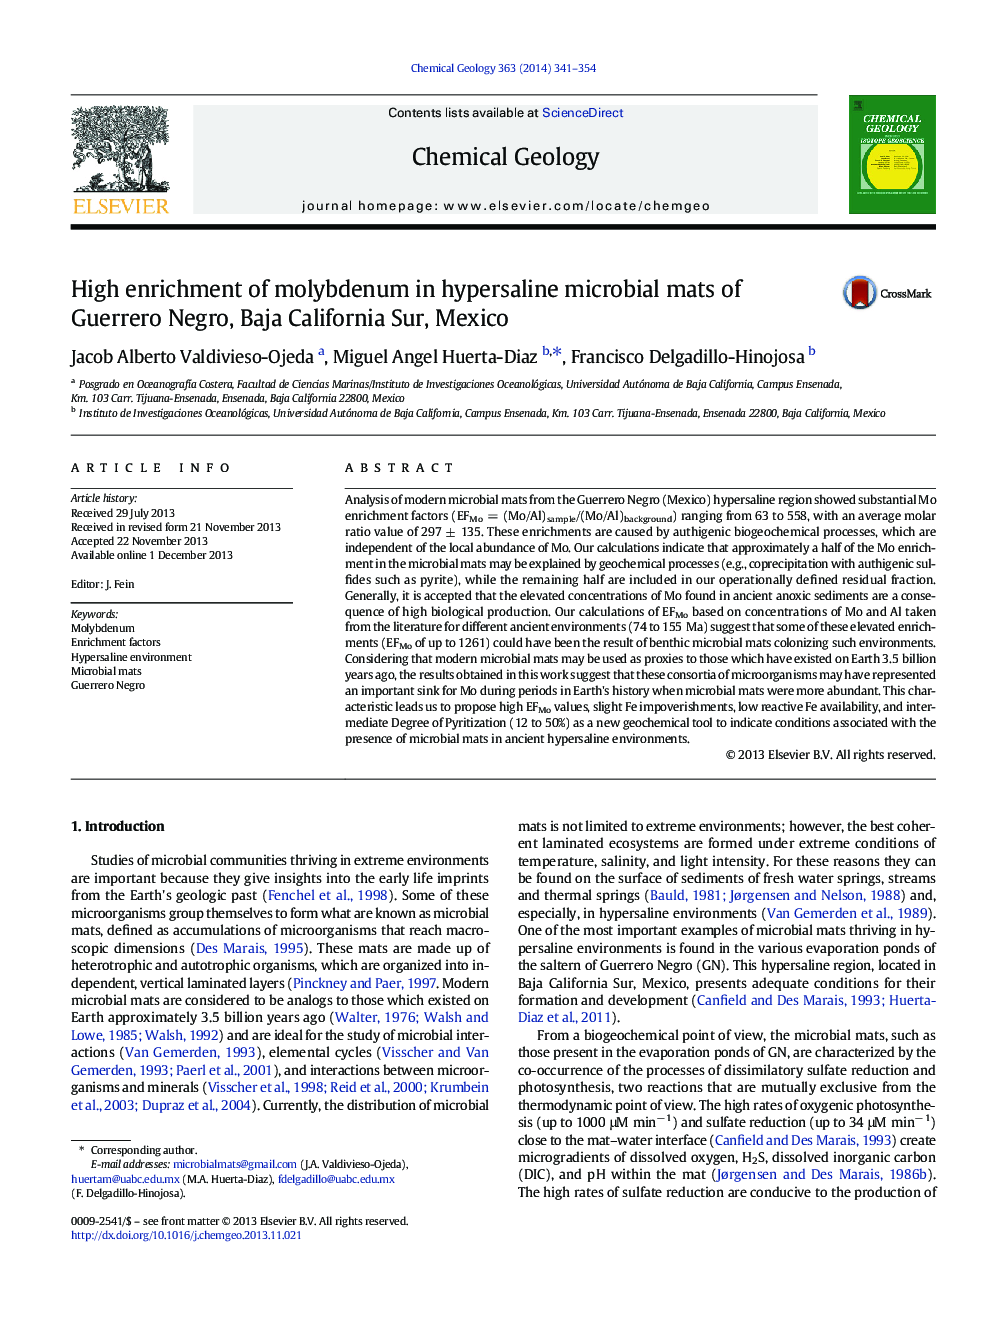 High enrichment of molybdenum in hypersaline microbial mats of Guerrero Negro, Baja California Sur, Mexico